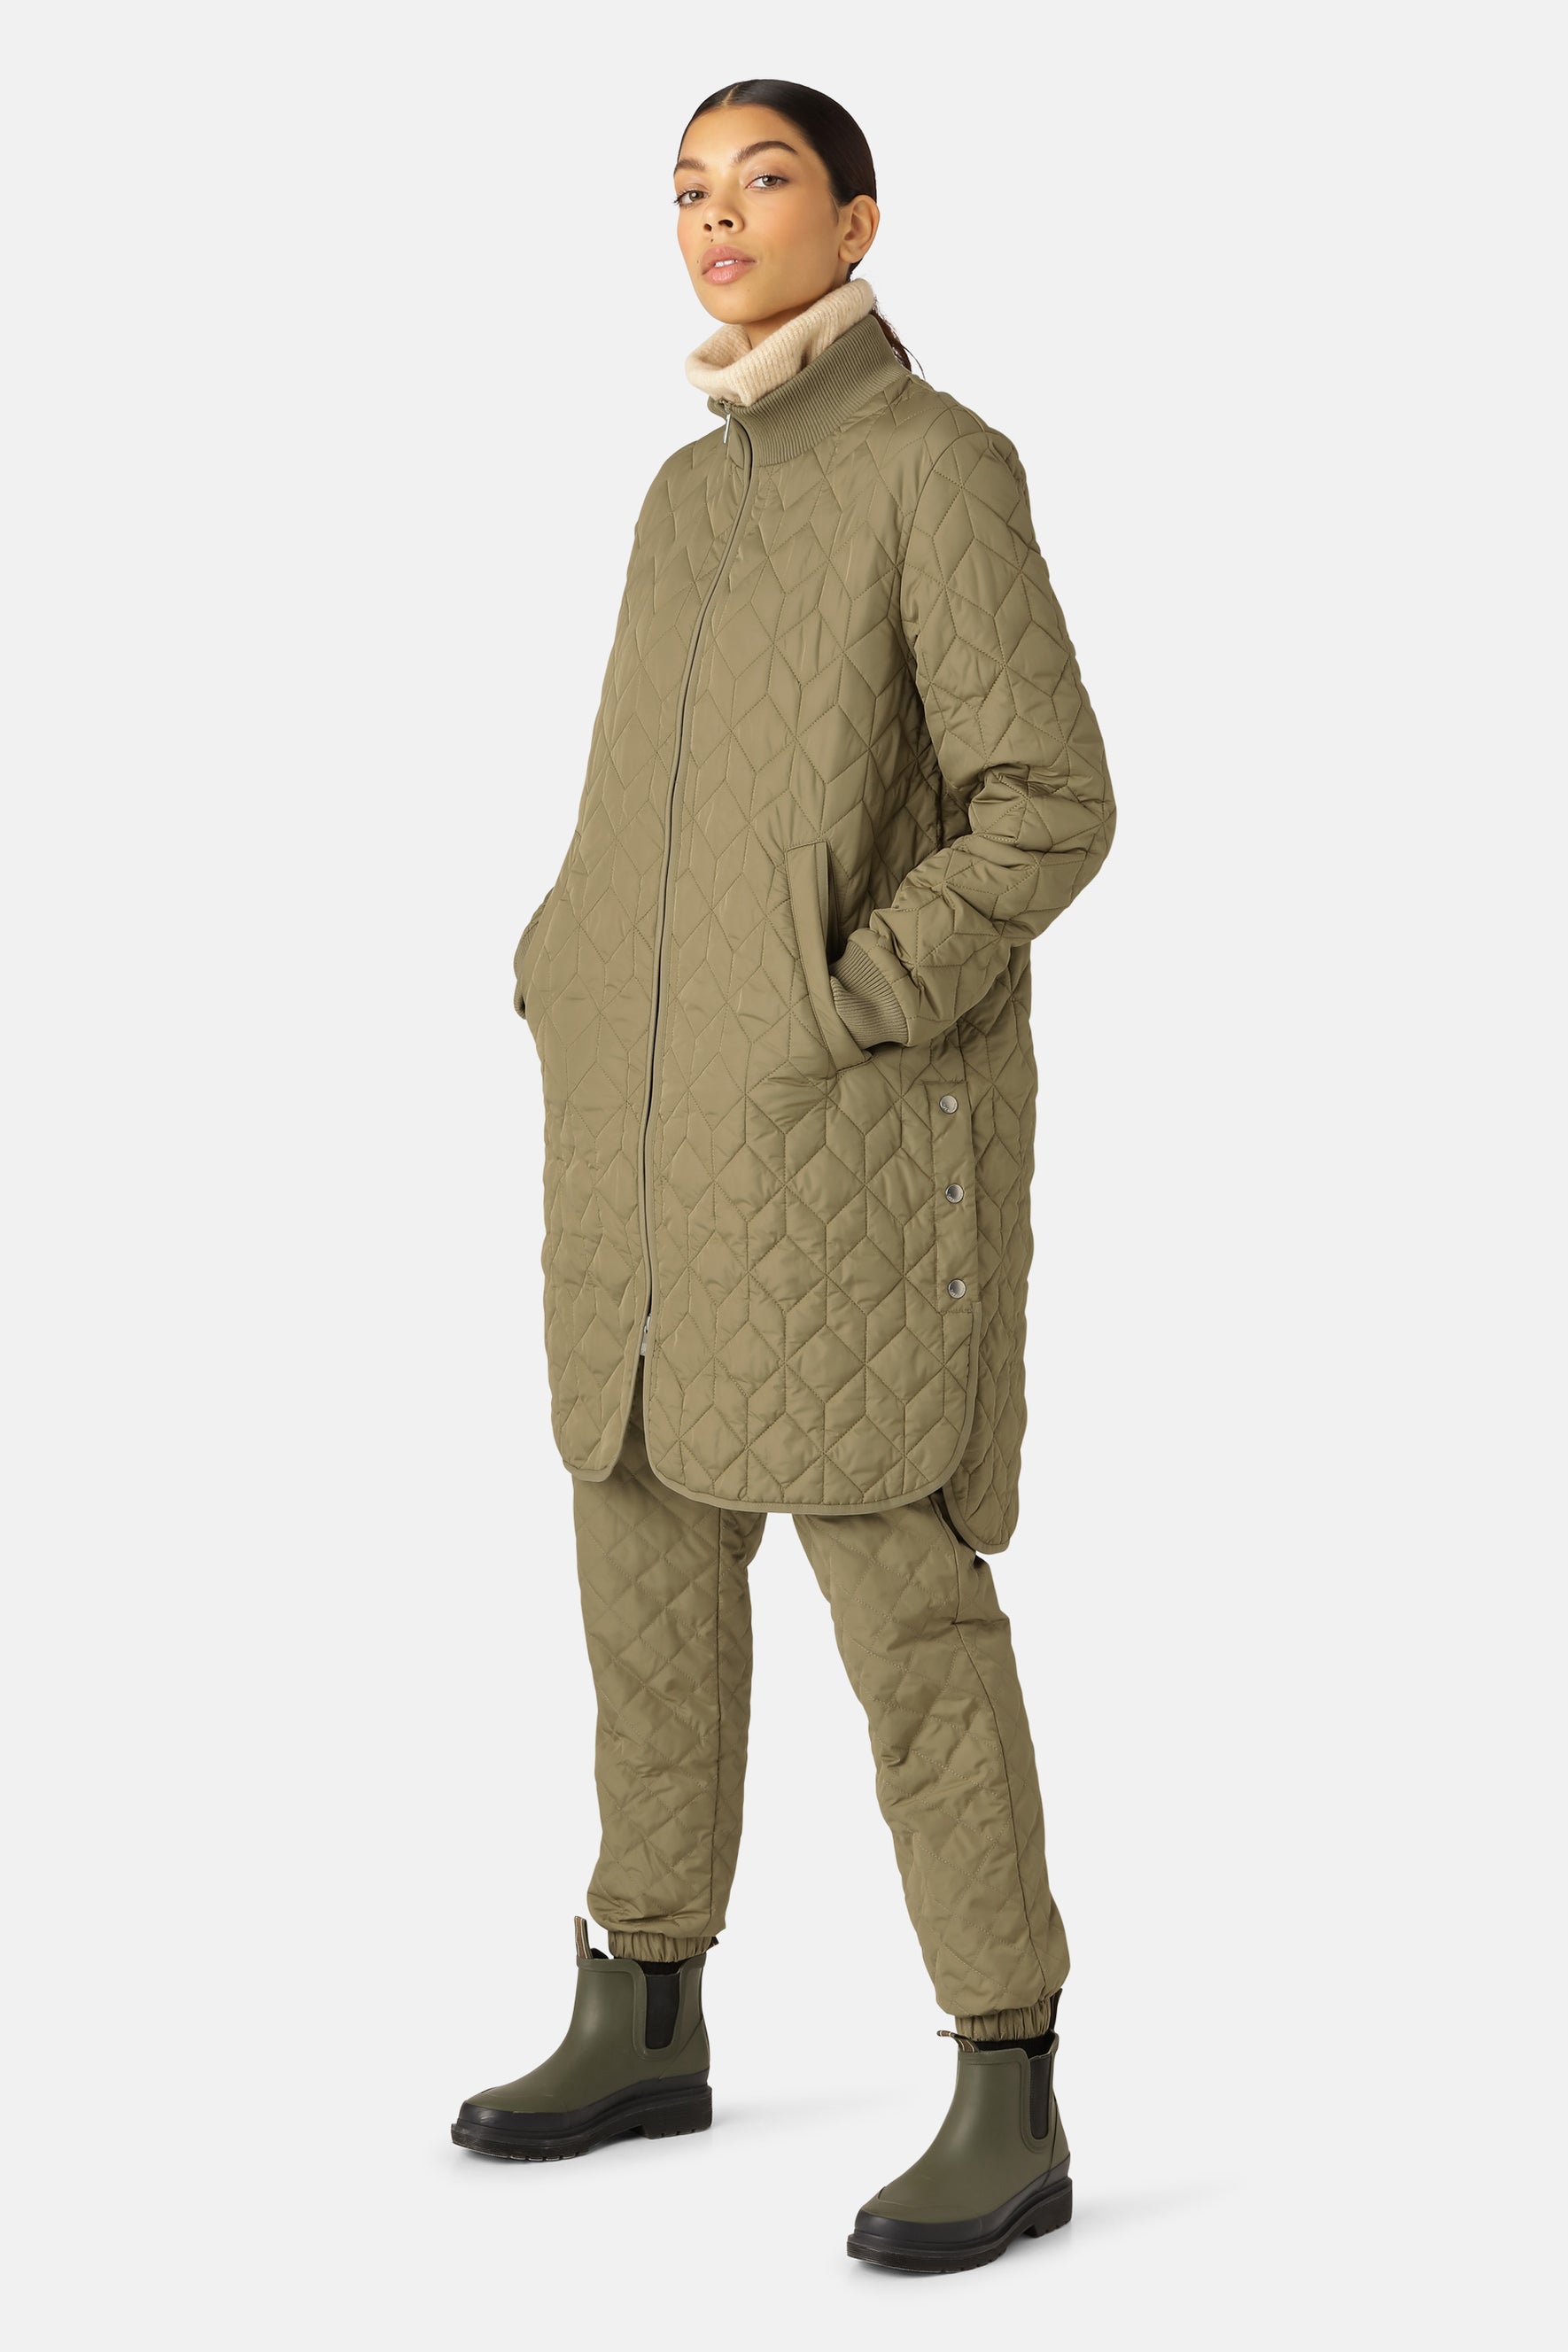 Ilse Jacobsen ART06 - Padded Quilt Coat 457 Sage modeled